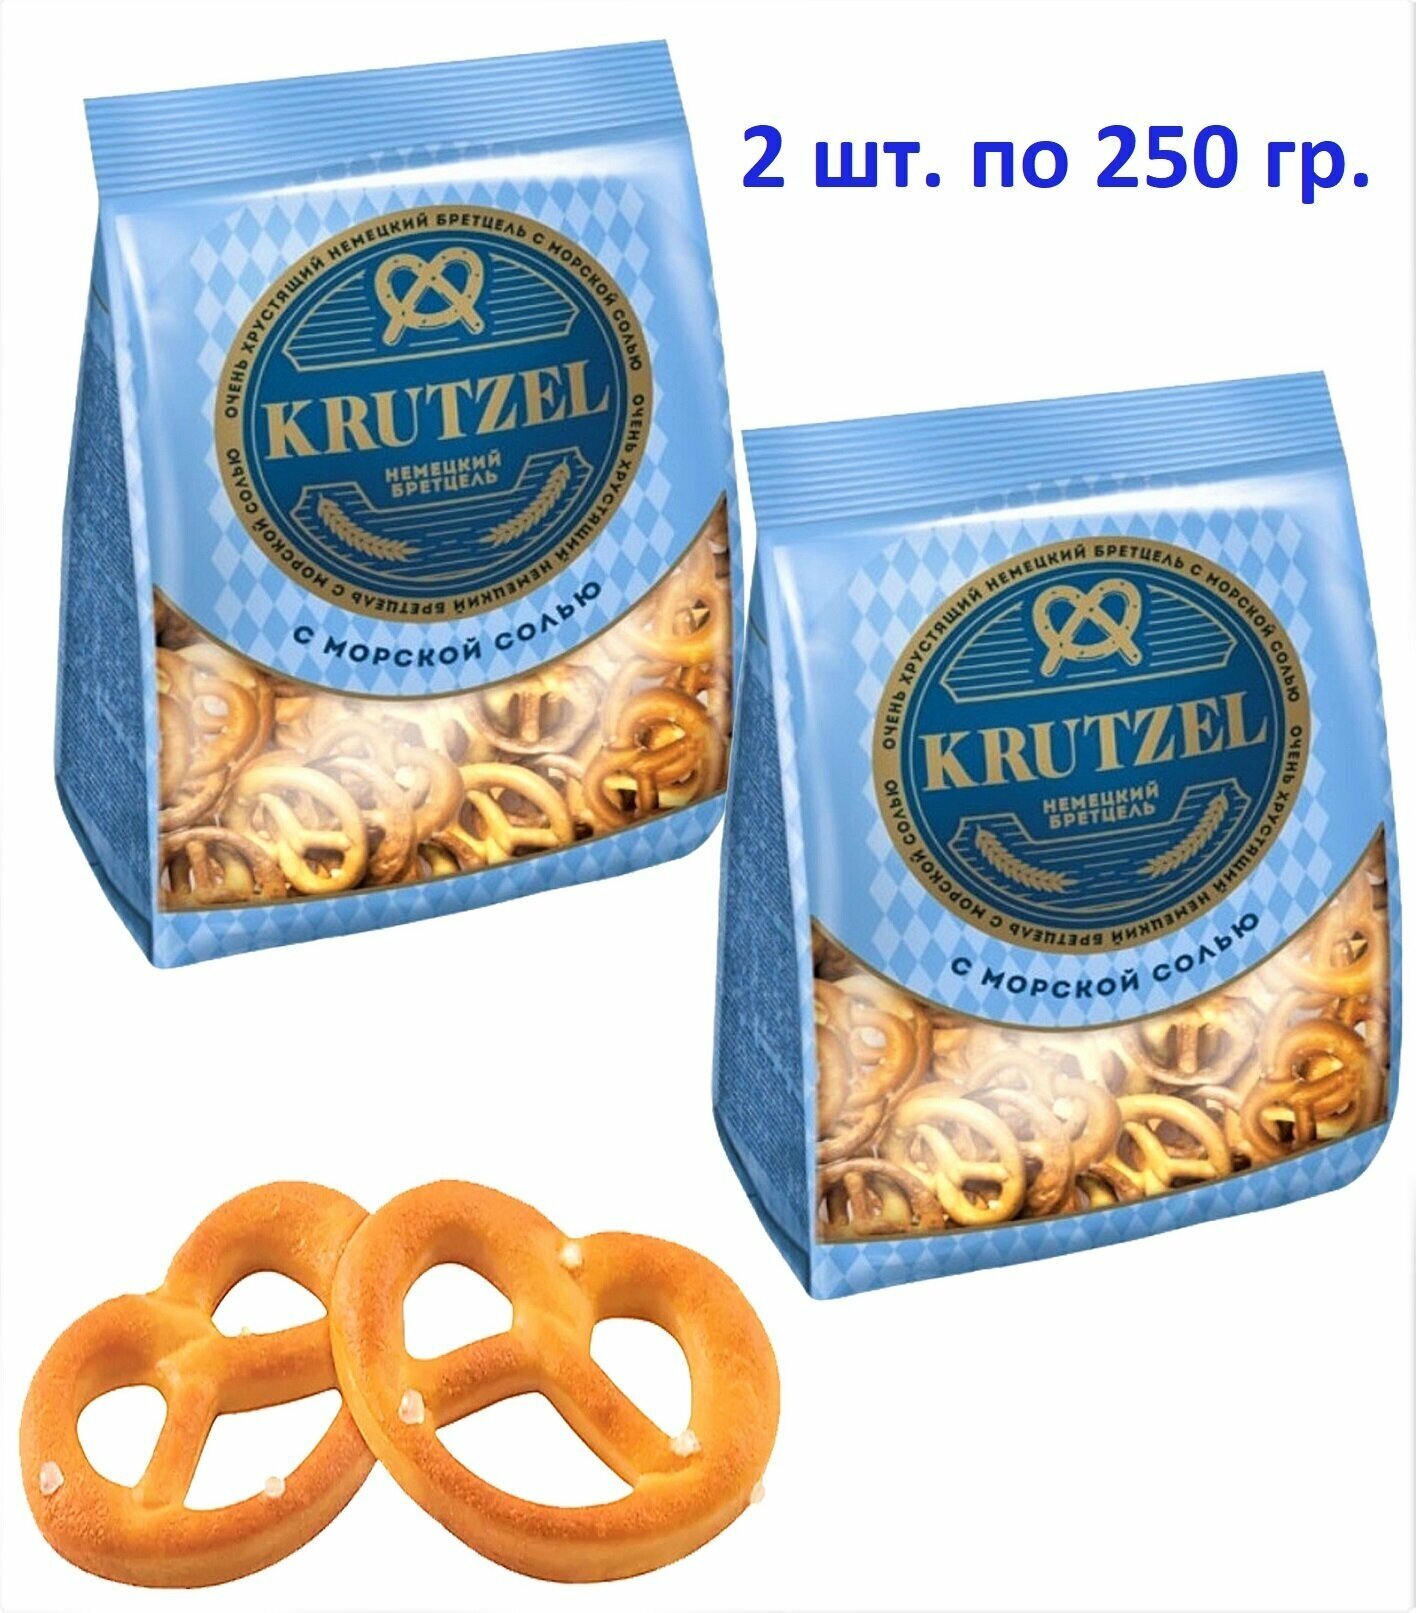 Крендельки KDV Krutzel немецкий Бретцель с морской солью, 2 шт по 250 г